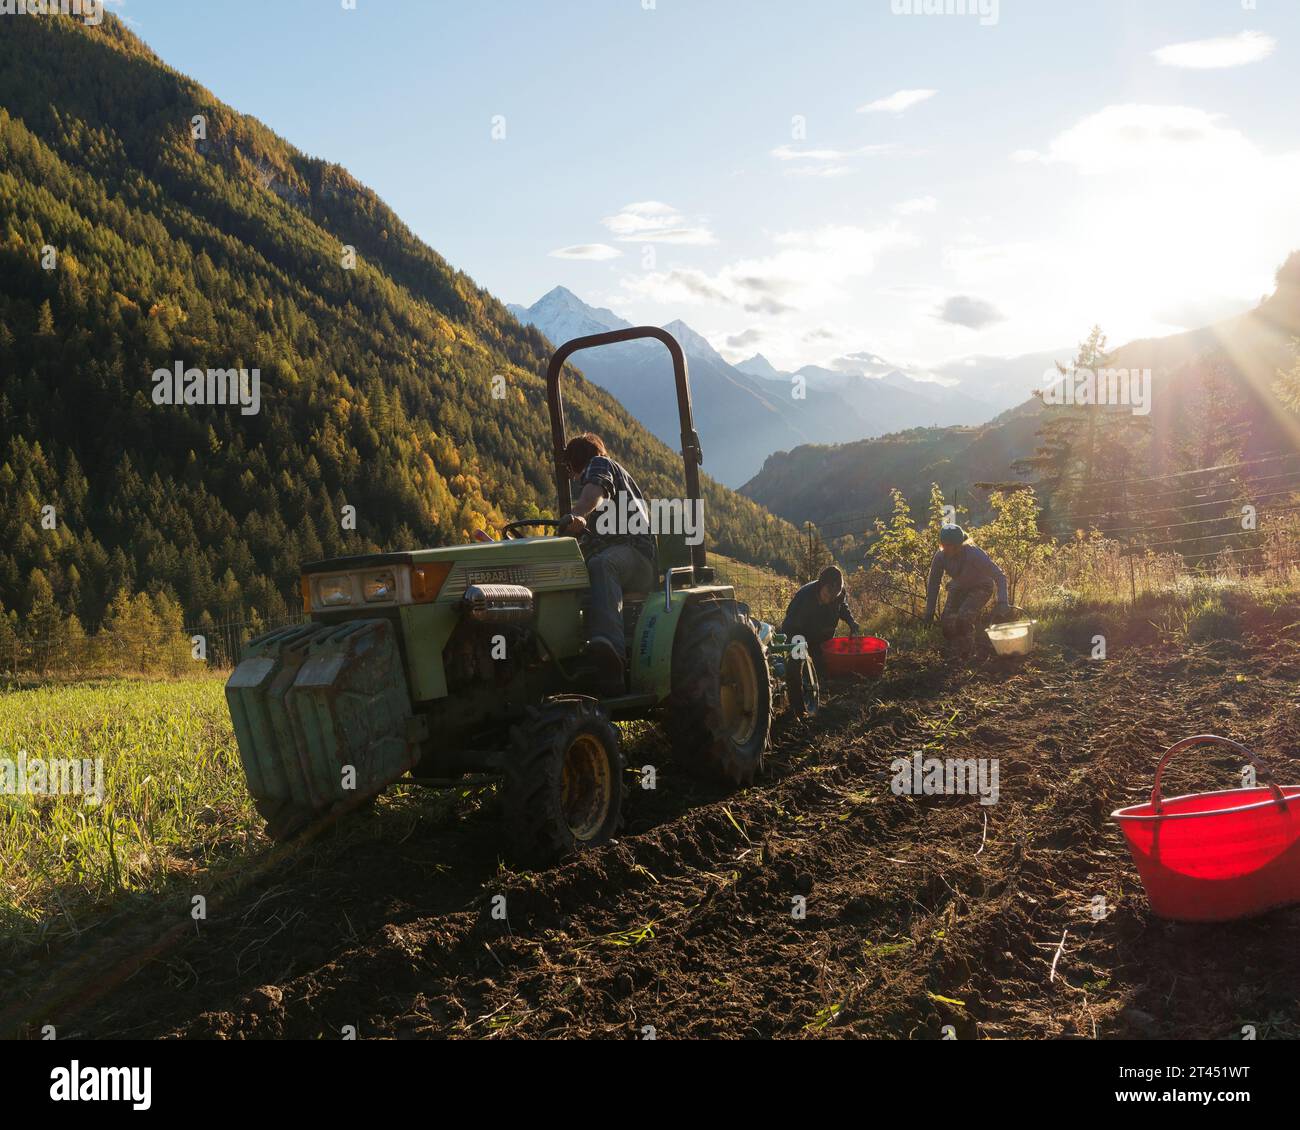 L'agricoltore guida un trattore durante la raccolta delle patate mentre le persone raccolgono le patate alle spalle in una giornata autunnale nella Valle d'Aosta NW Italia. 27 ottobre 2023 Foto Stock